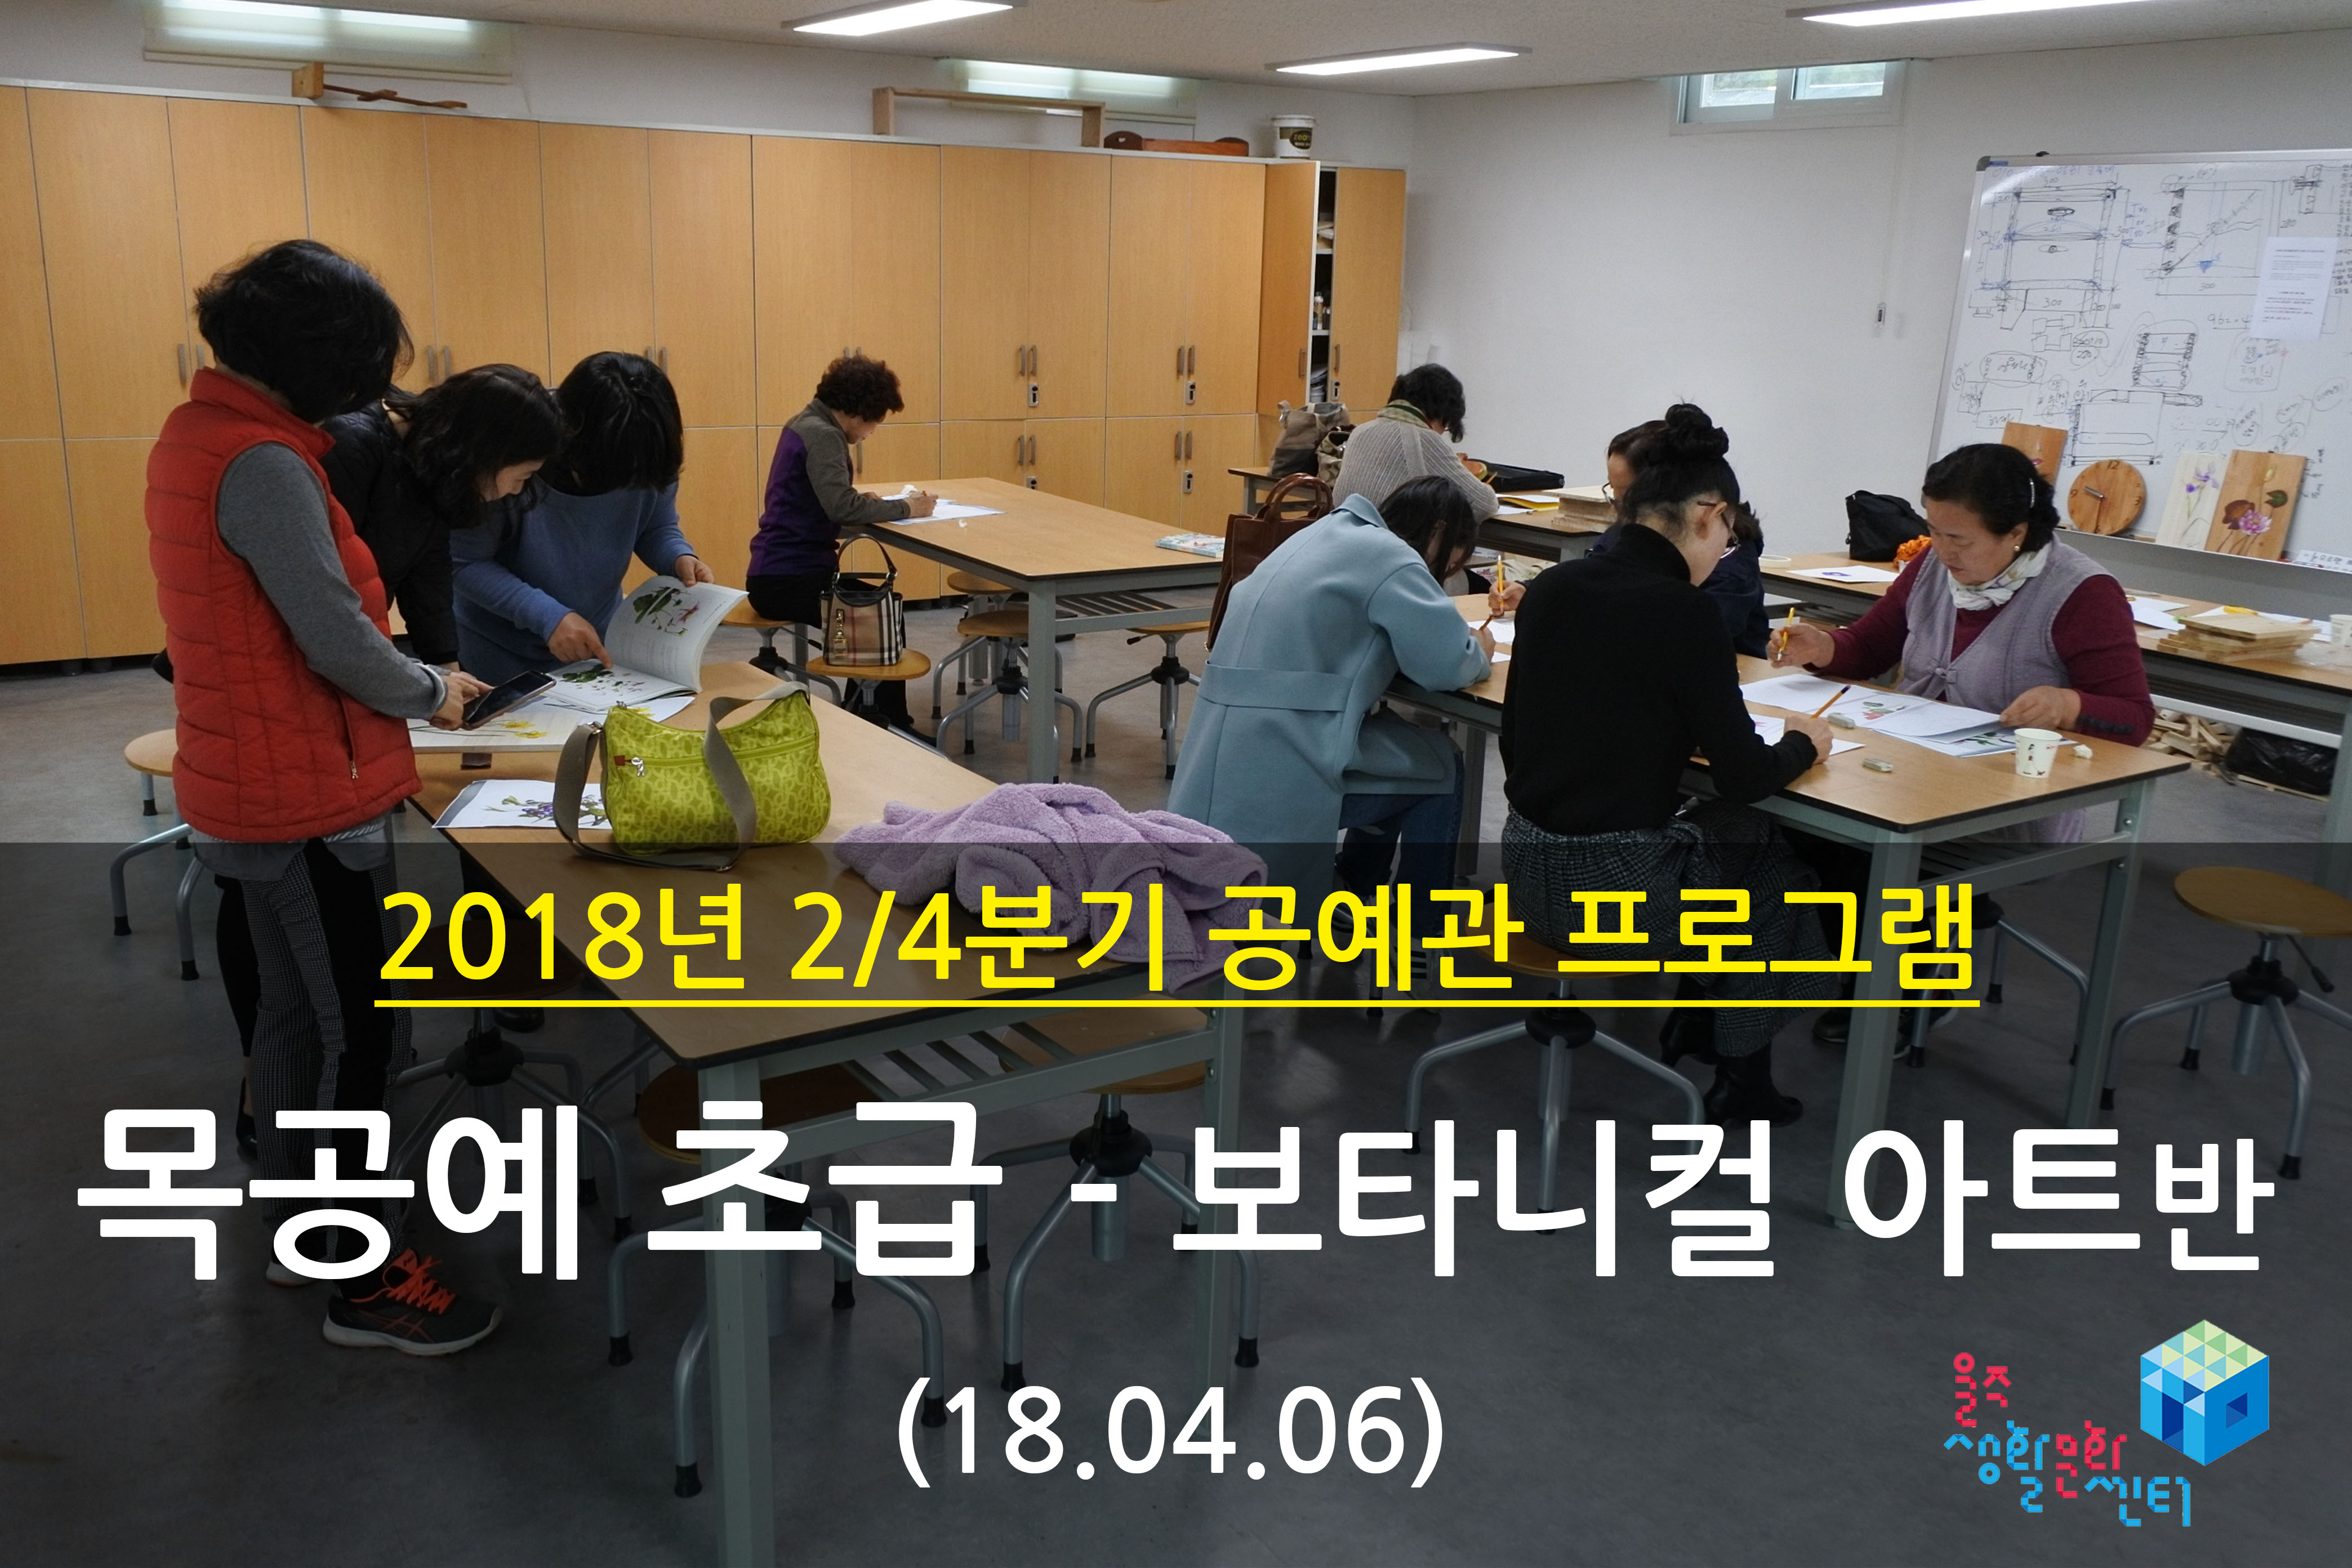 2018.04.06 _ 목공예 초급 - 보타니컬 아트반 _ 2/4분기 1주차 수업